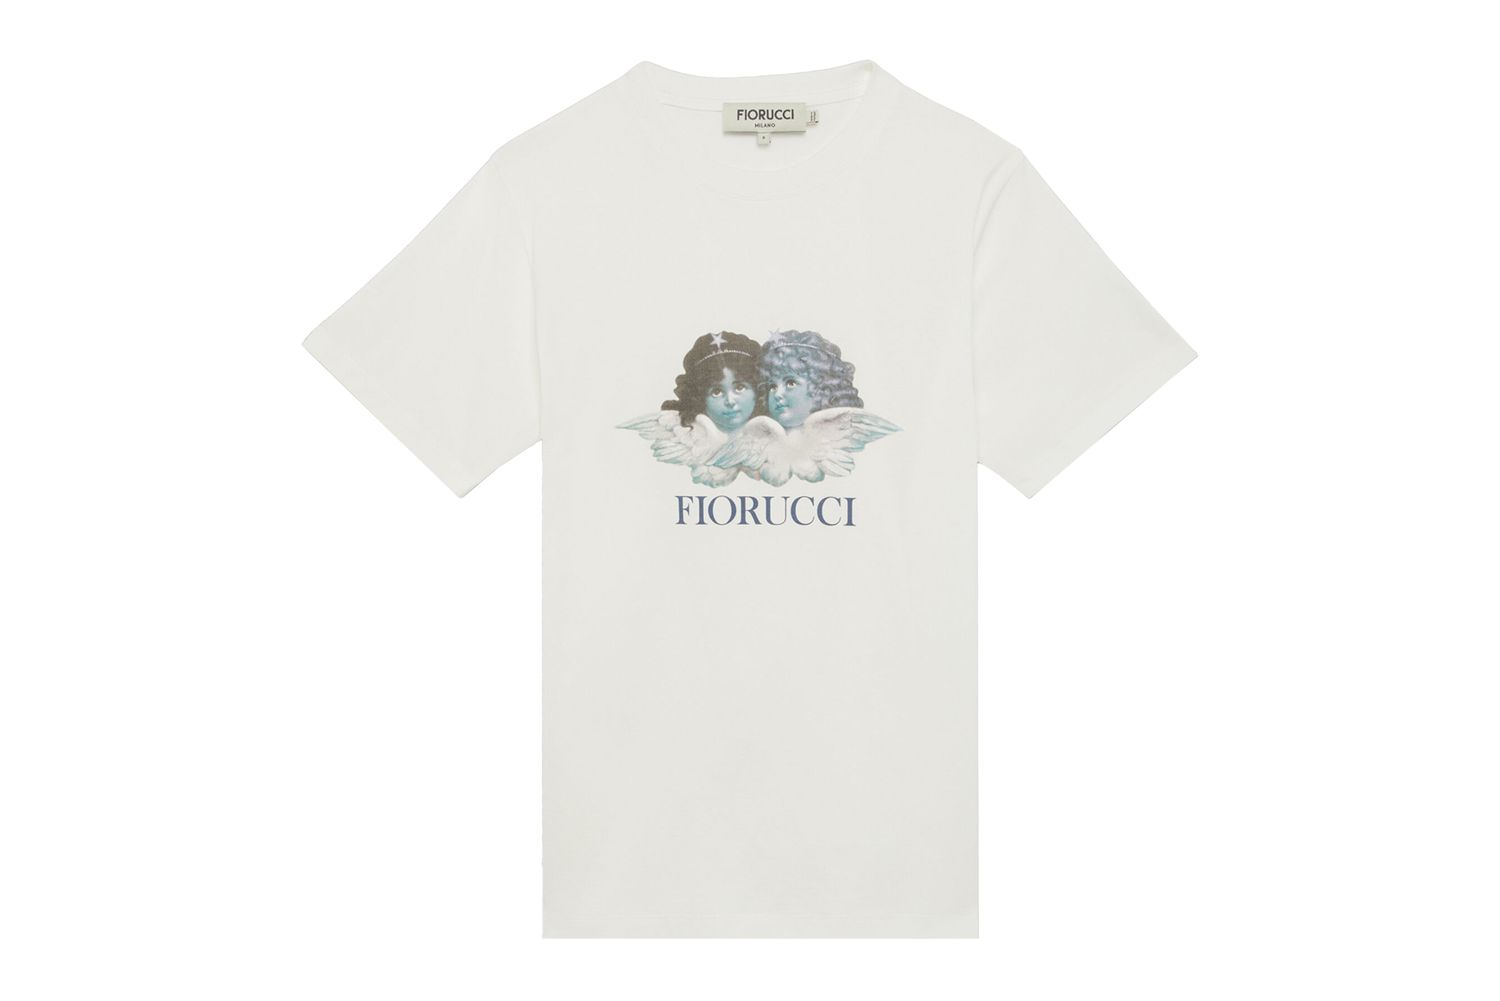  T-shirt com anjos ampliados fiorucci